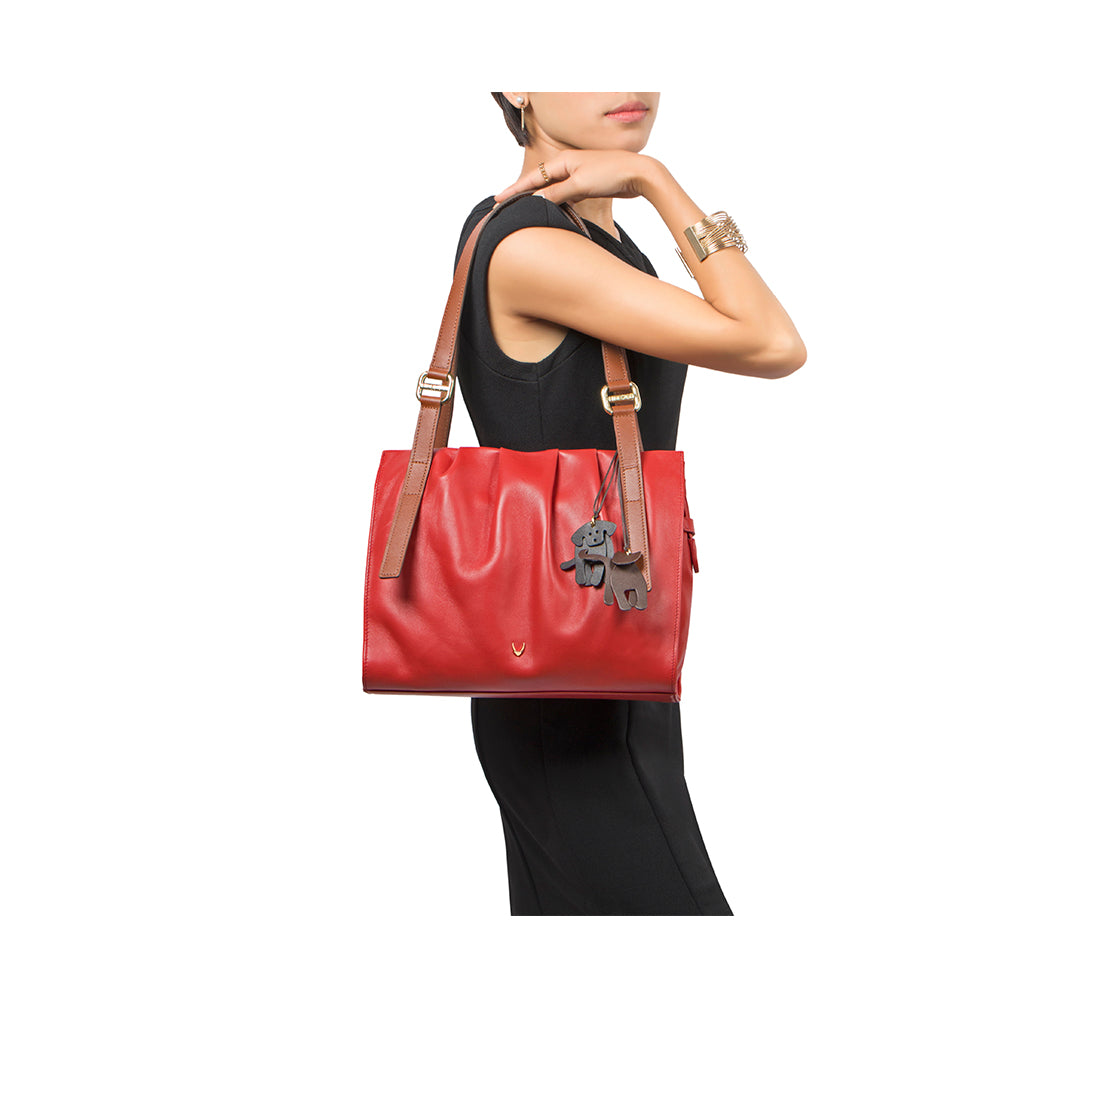 Buy Hidesign Brick Red Textured Medium Shoulder Handbag For Women